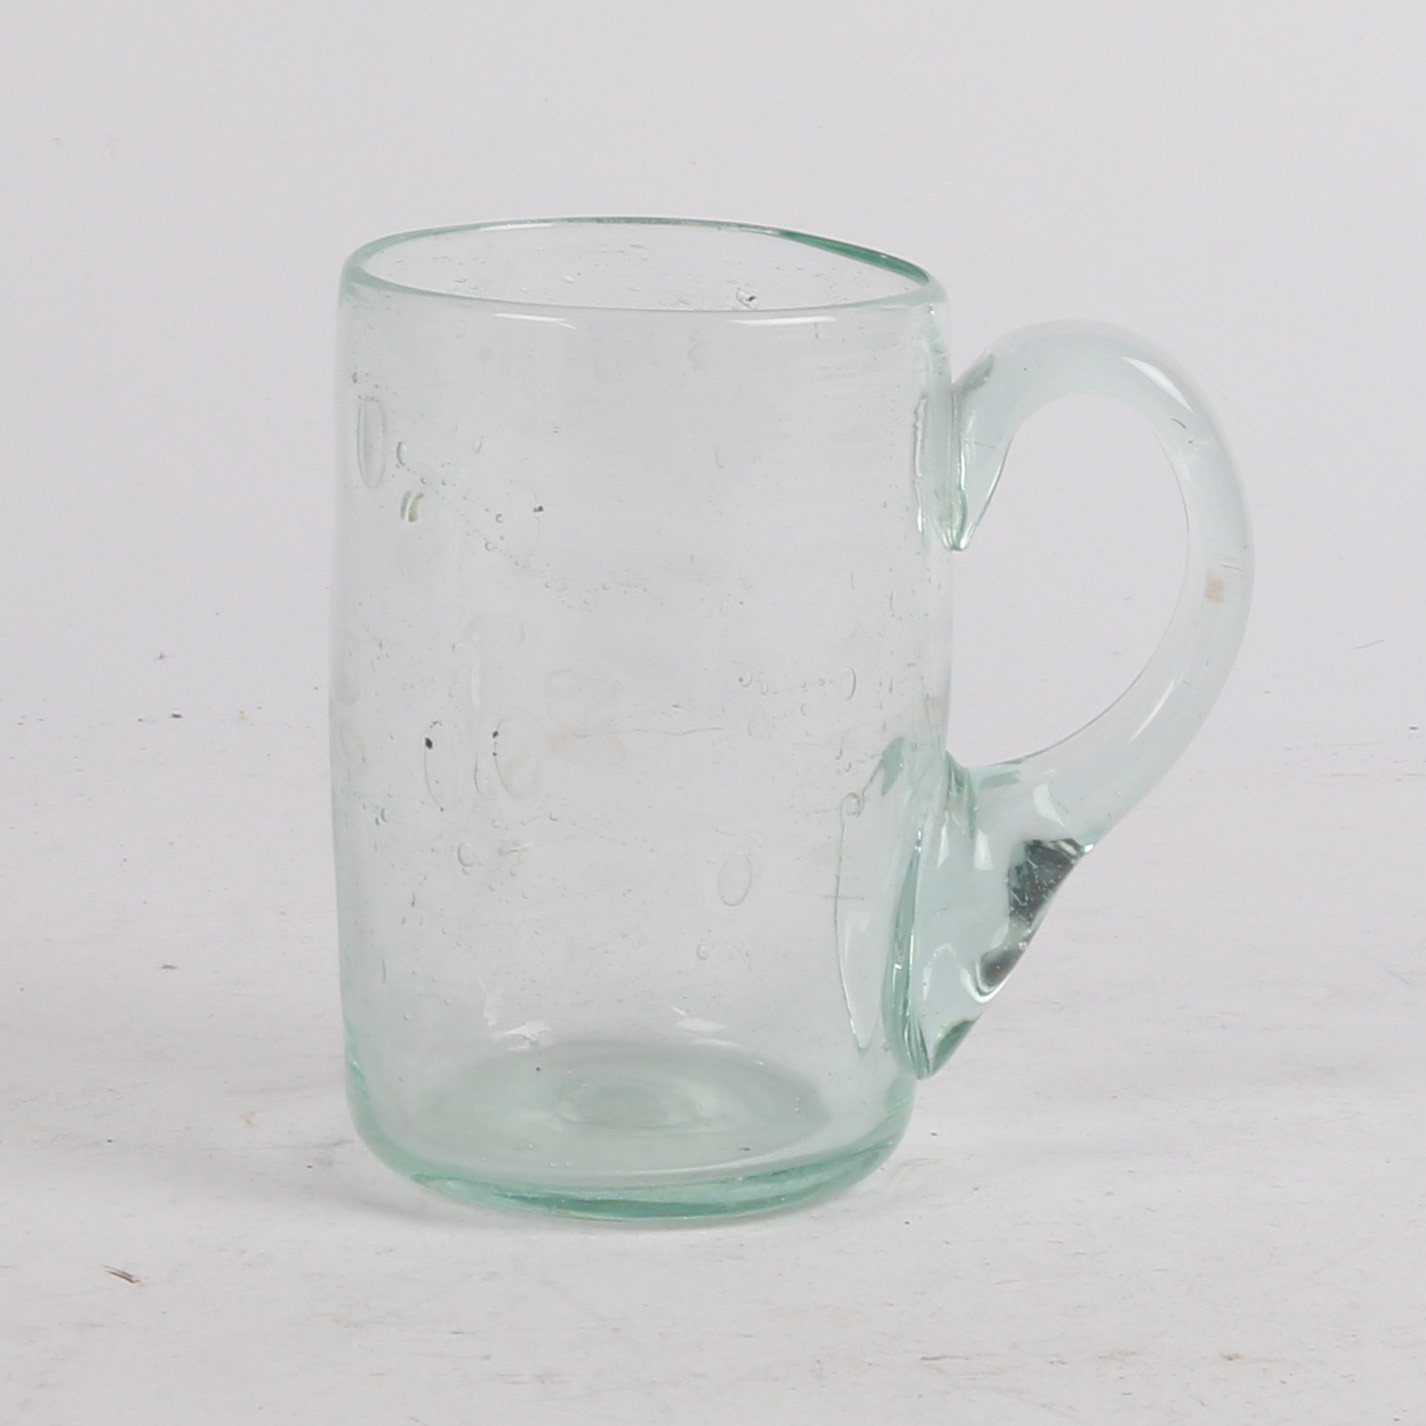 AN 18TH CENTURY GLASS MUG OR TANKARD.